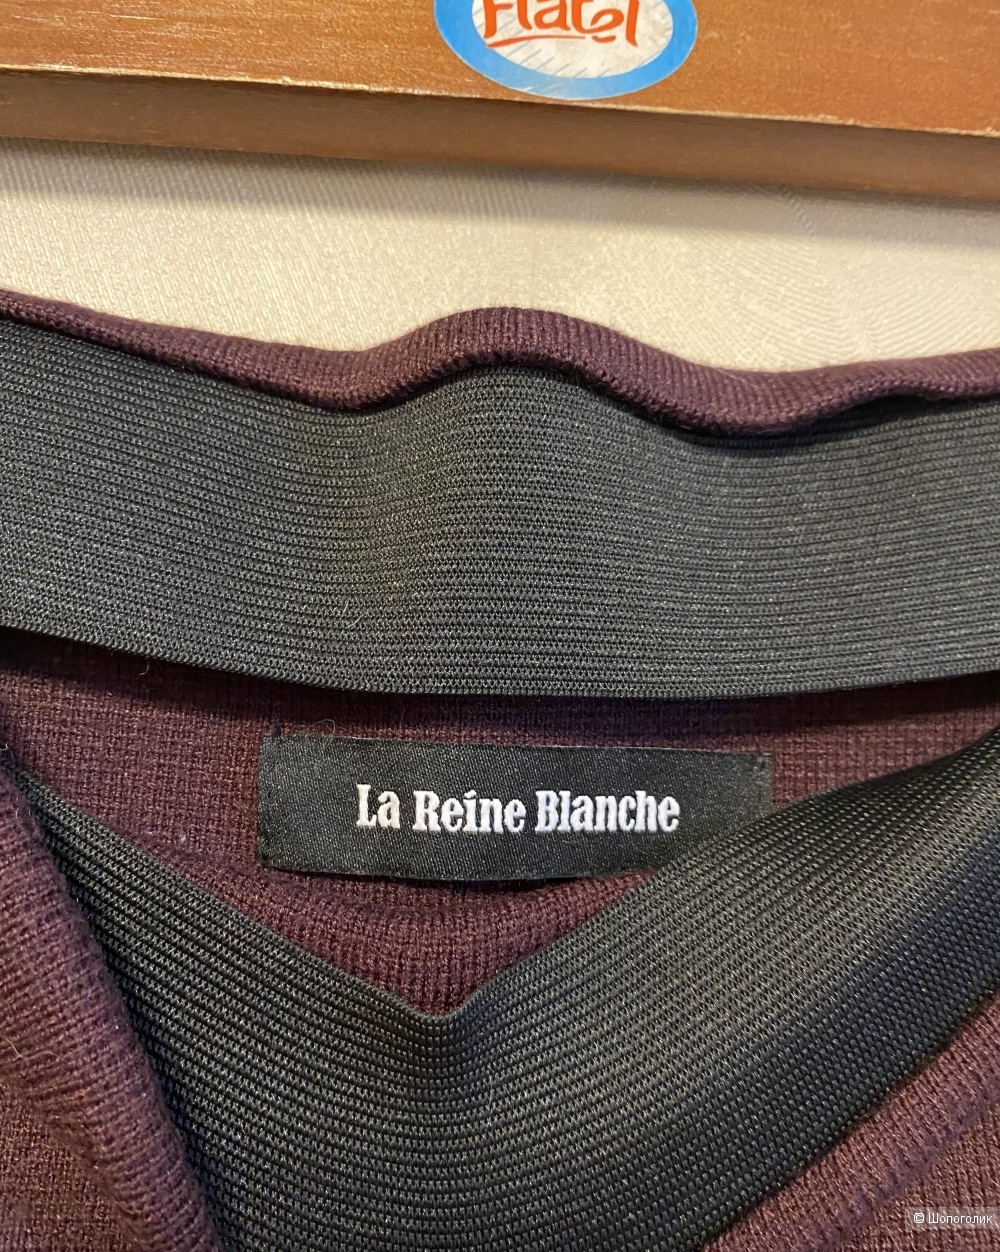 Юбка La Riene Blanche, размер 44-46.